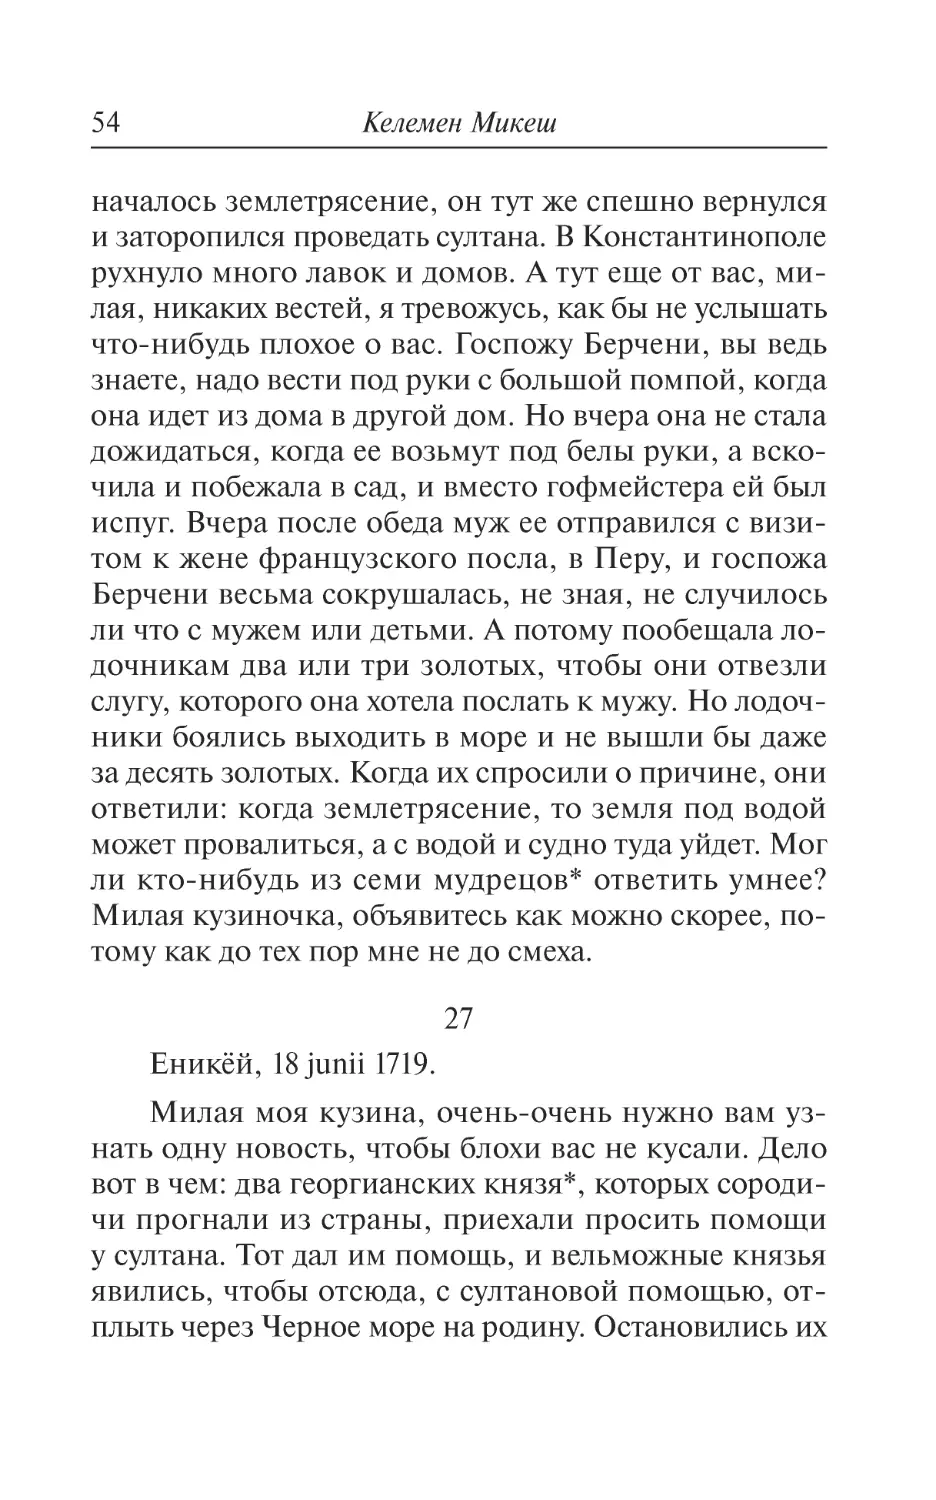 27. Еникёй, 18 junii 1719